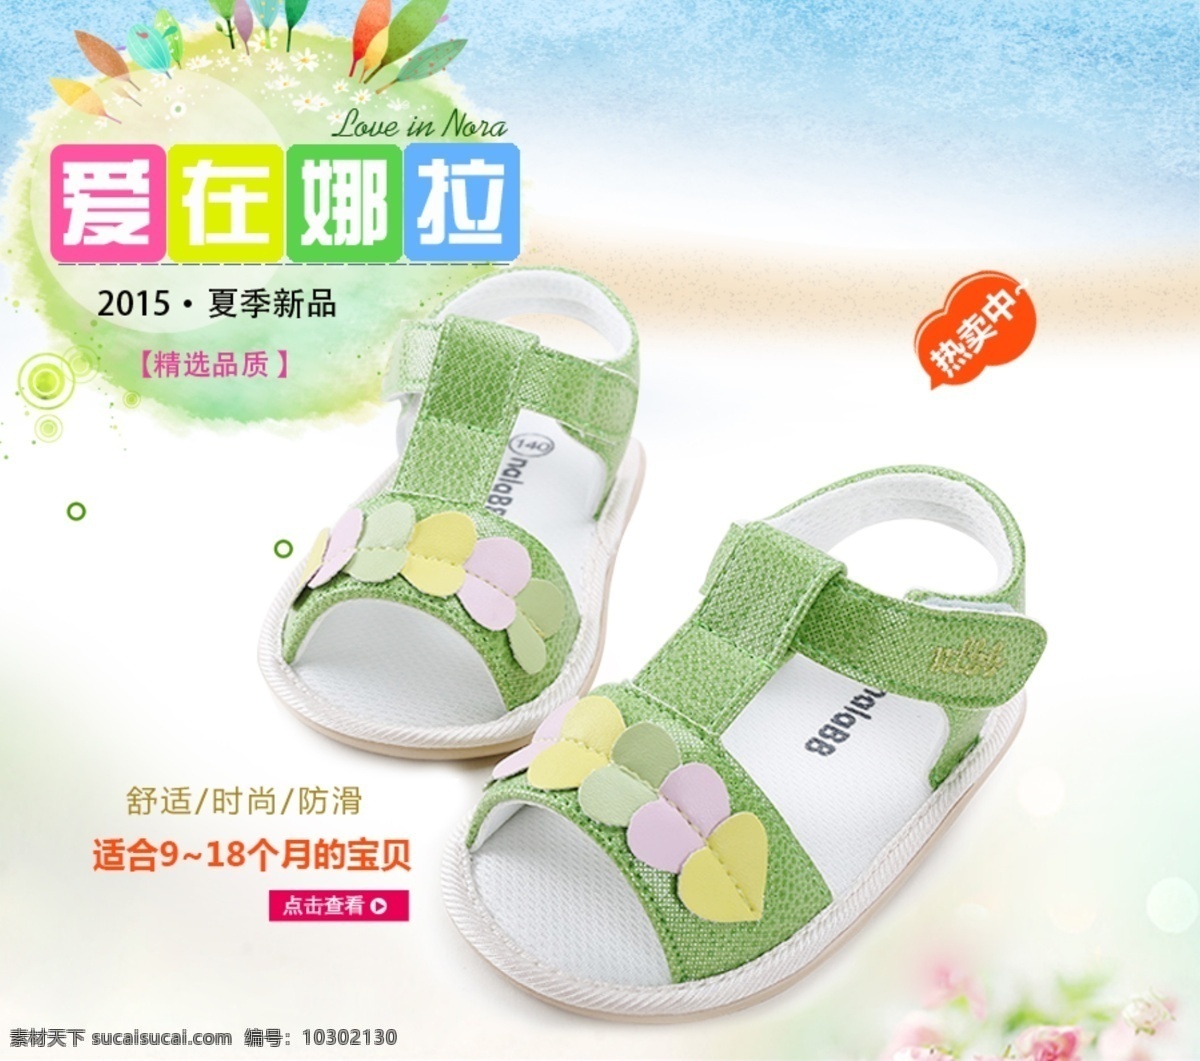 淘宝 婴儿鞋 主 图 婴儿鞋子 宝宝鞋 夏季新品 爱在娜拉 广告 海报